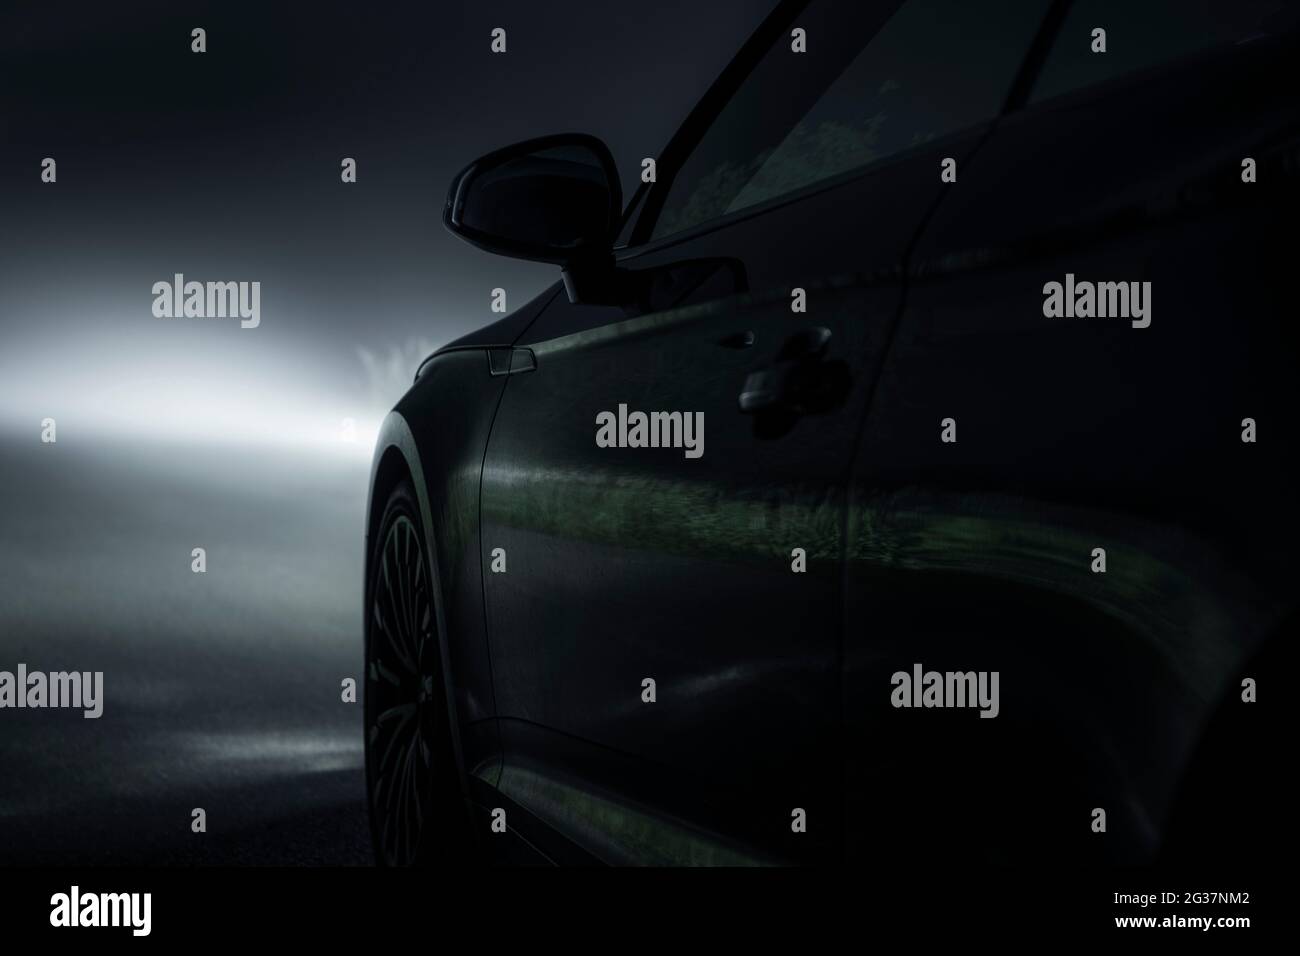 Fahren in Foggy Wetter während der Nacht Stunden. Straßenbedingungen. Fahrzeugdesign. Stockfoto